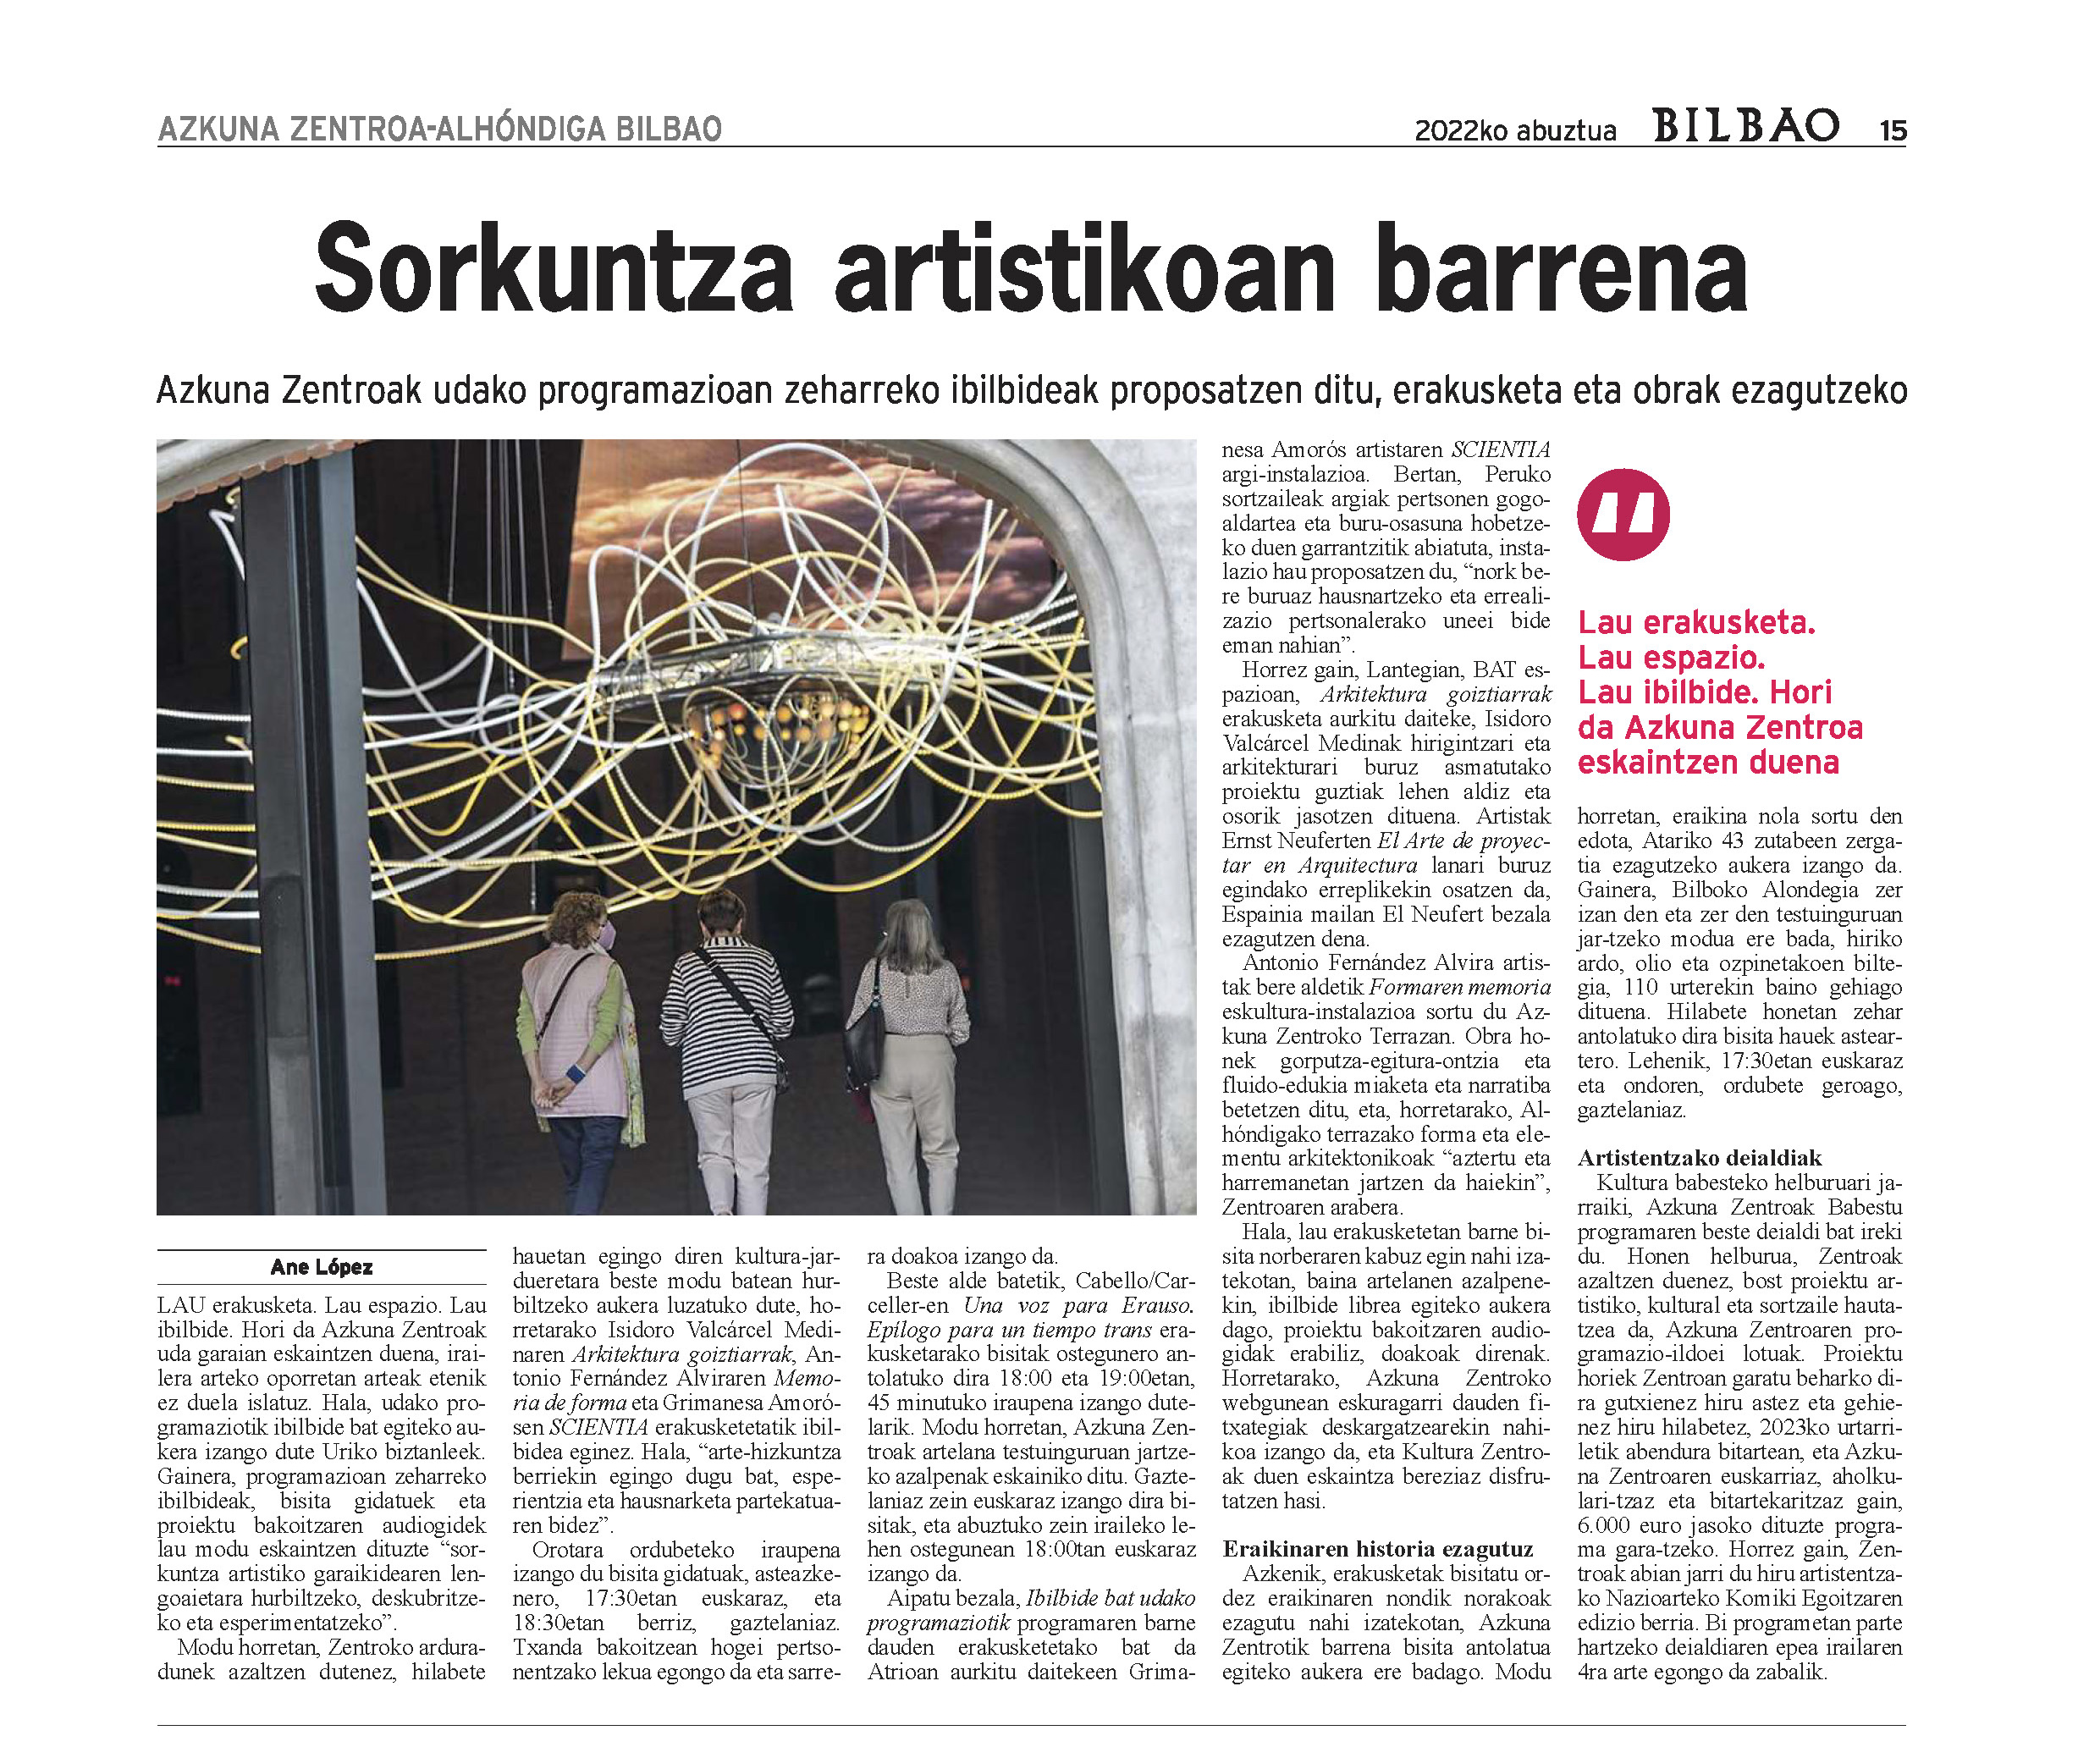 Grimanesa Amoros Scientia news article on Periodico Bilbao